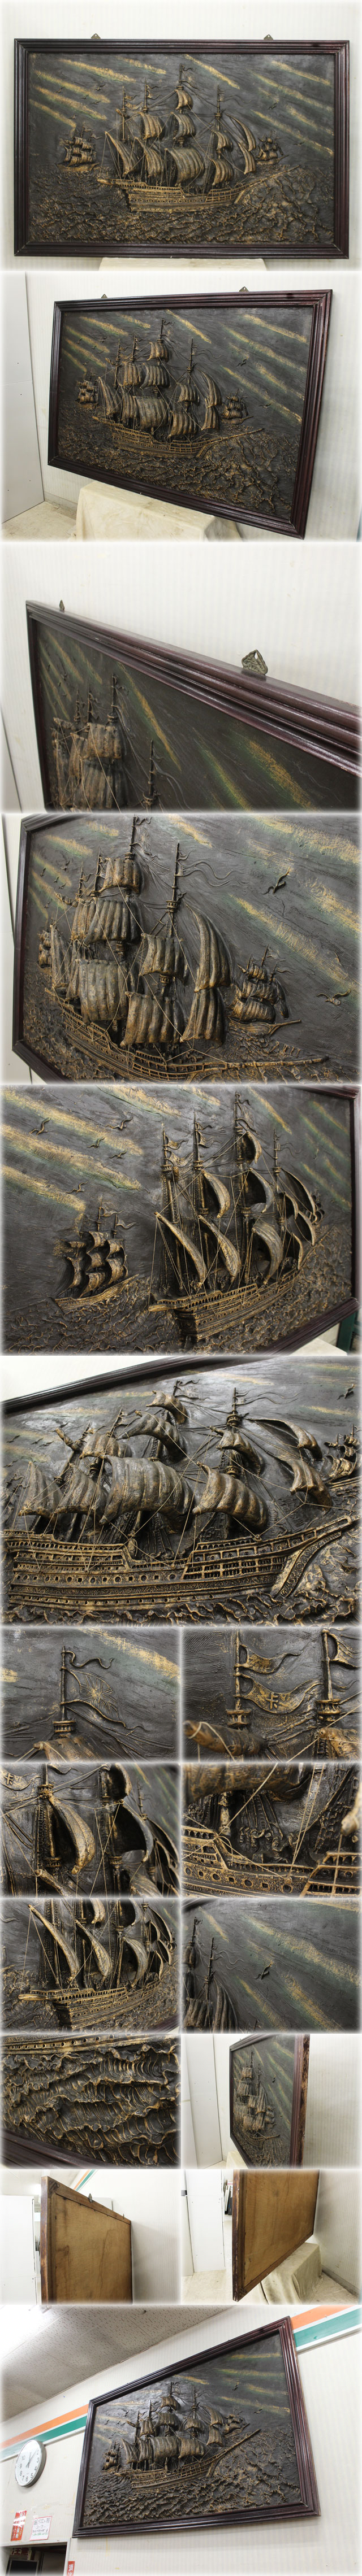 海外出荷帆船額 W1890xH1230mm クラシック 大型アートフレーム 立体造形 アンティーク 美術品 インテリア雑貨 西洋彫刻